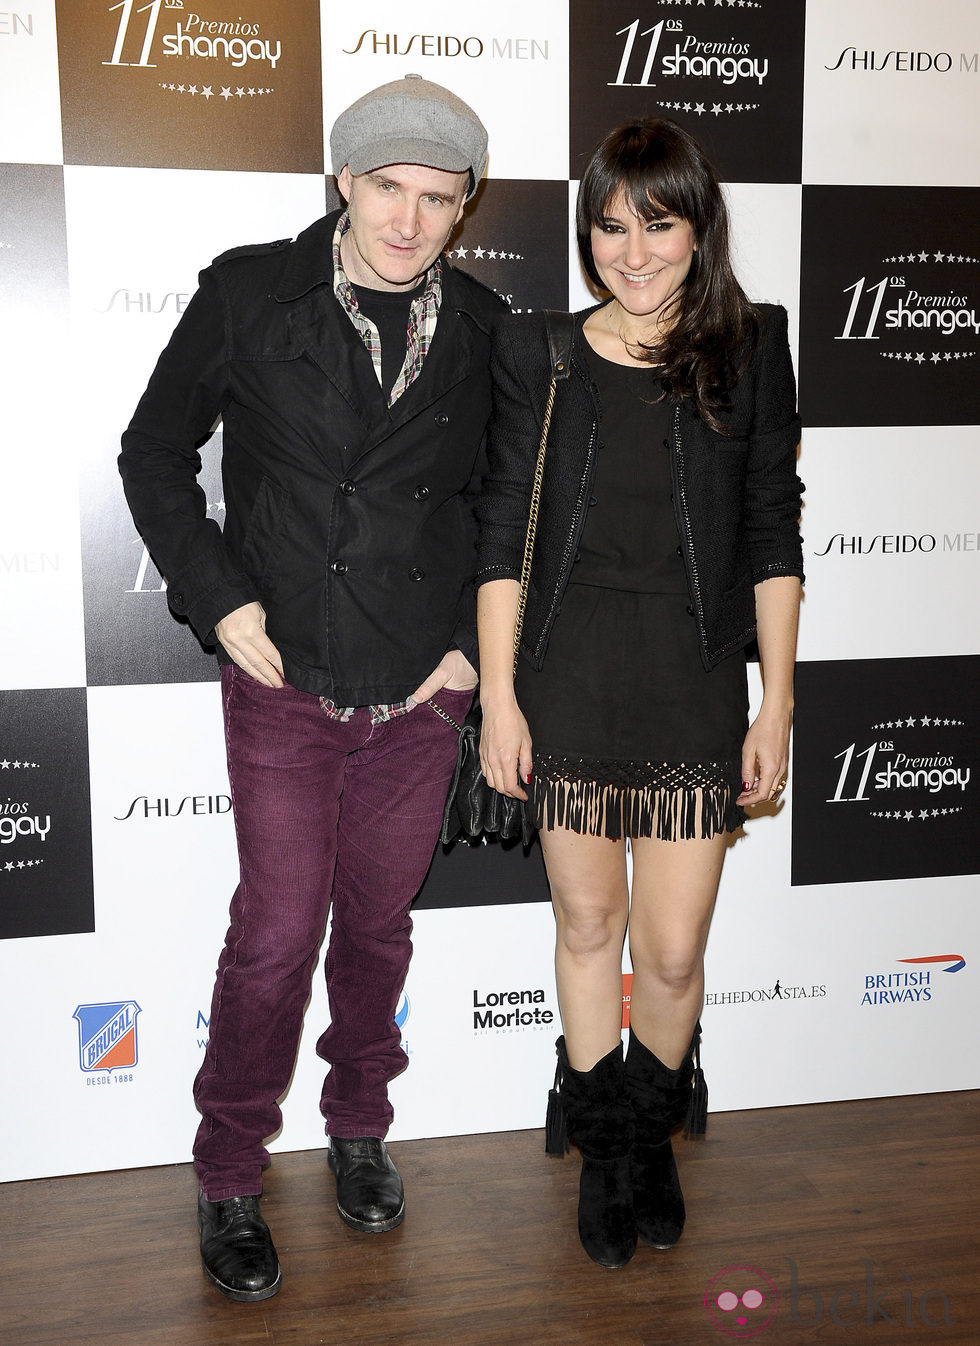 Juan Aguirre y Eva Amaral en los Premios Shangay 2012